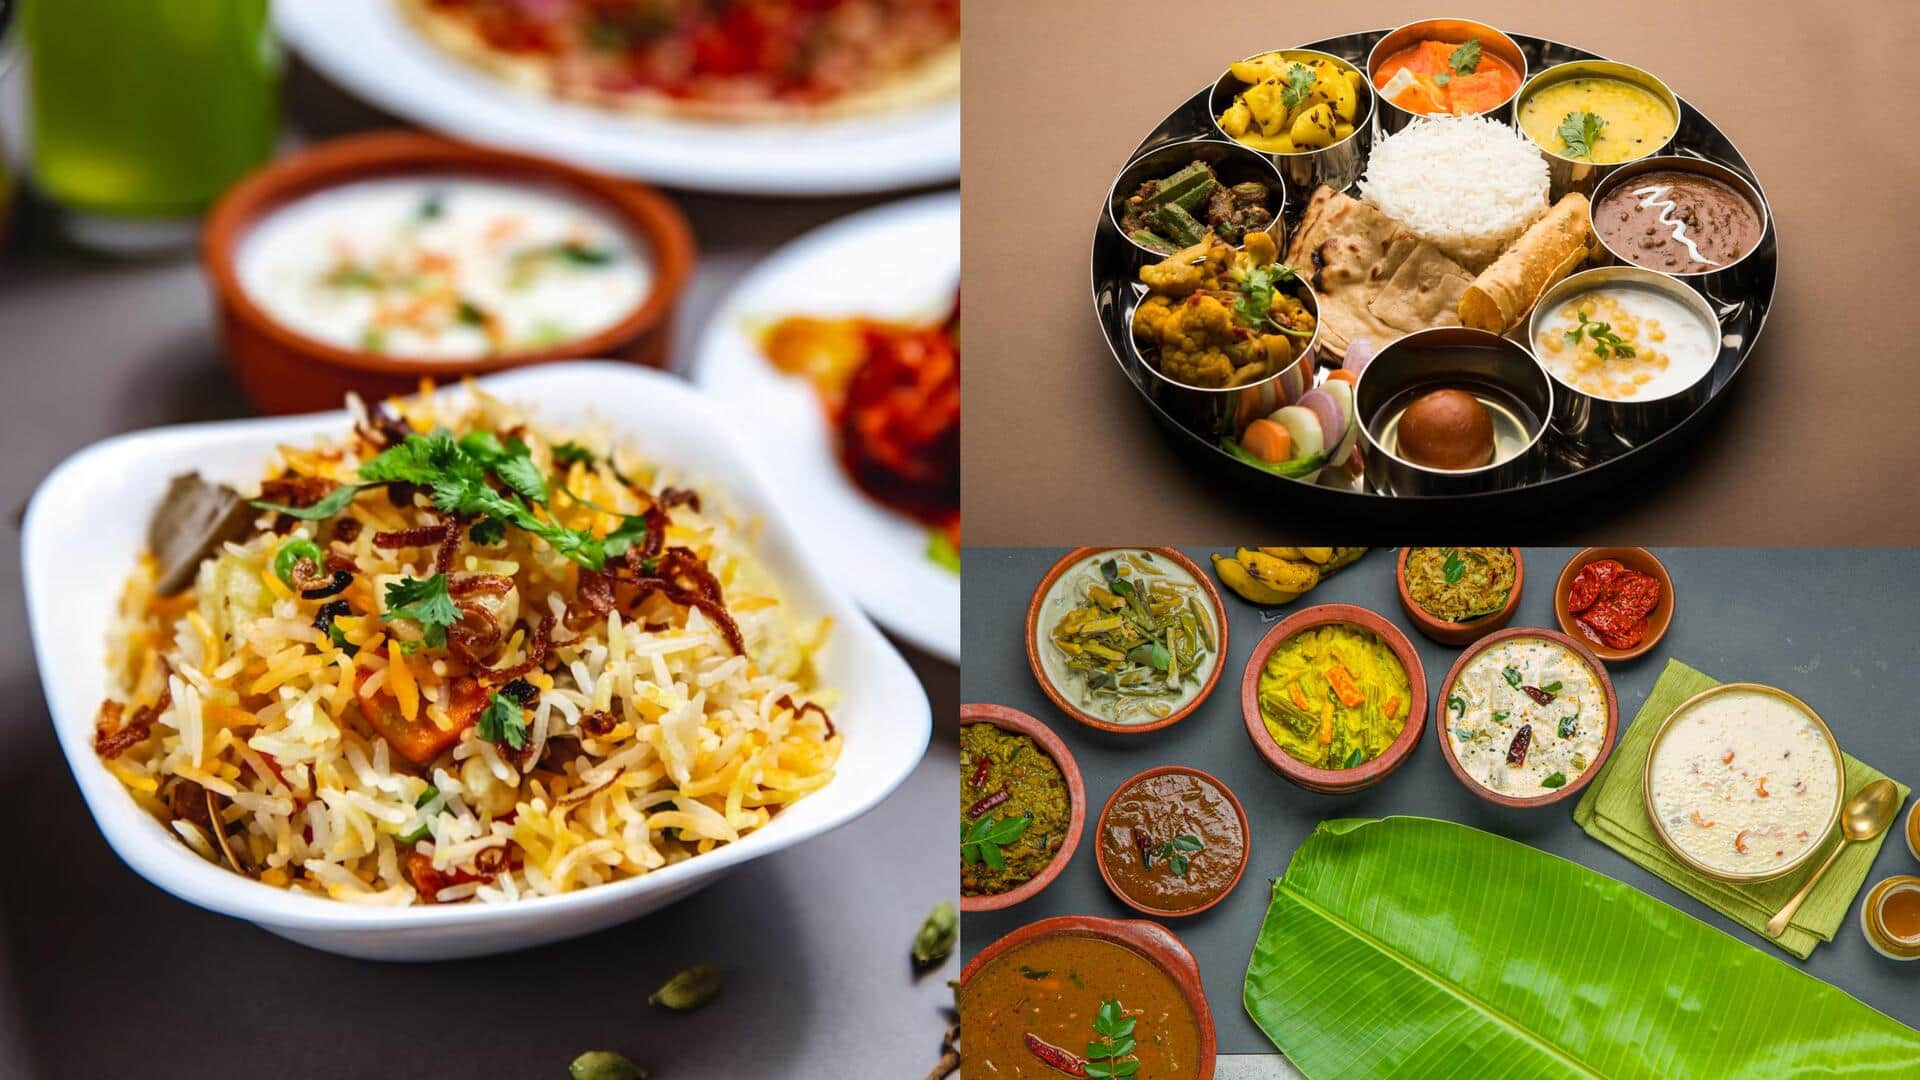 भारत के ये 5 प्रकार के व्यंजन दुनियाभर में हैं बहुत प्रसिद्ध